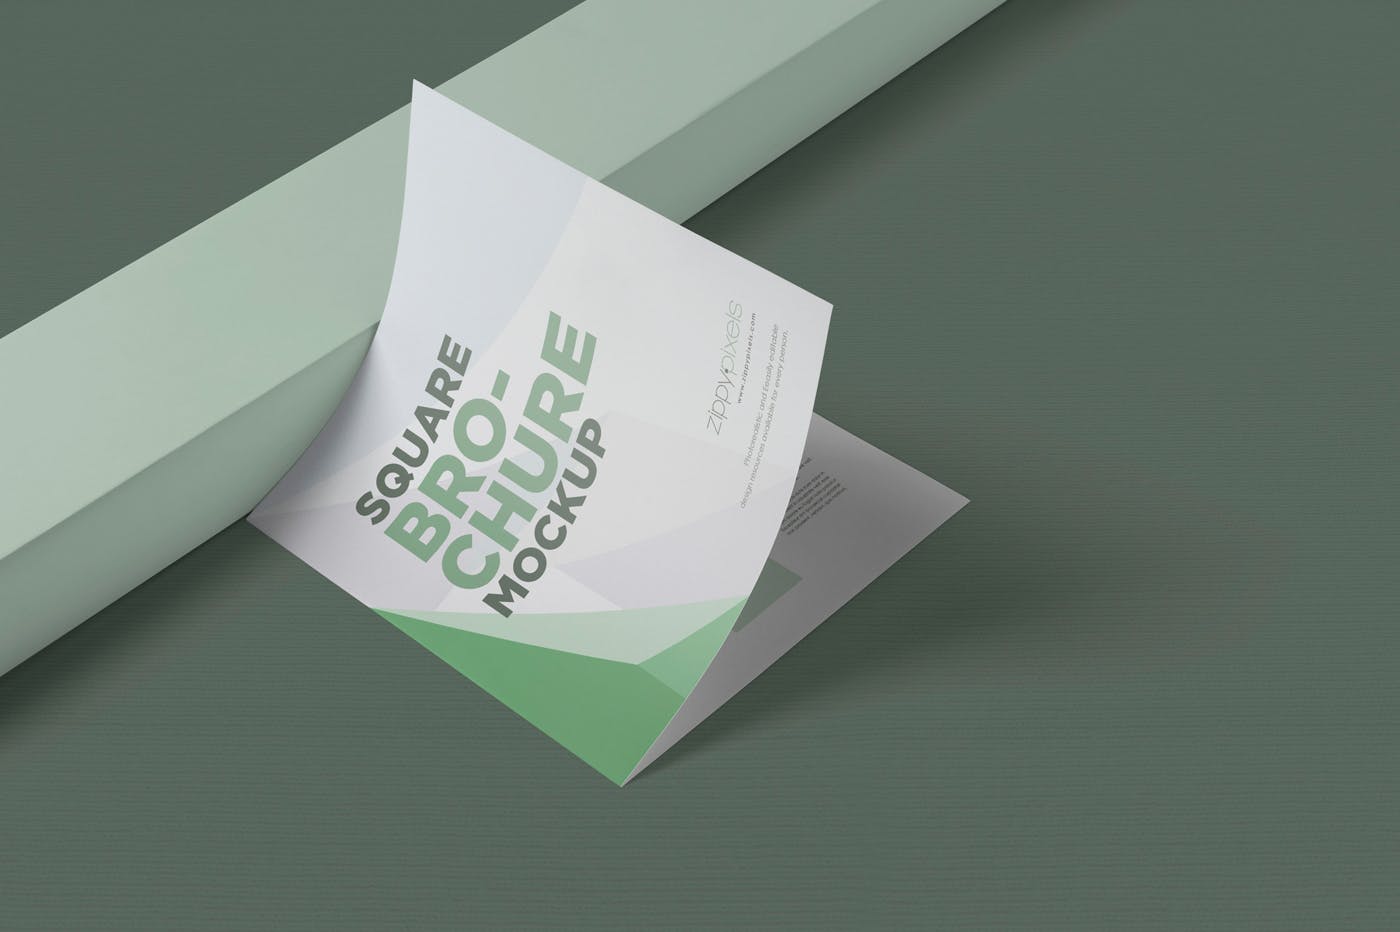 方形对折页宣传手册设计效果图样机第一素材精选 Square Bifold Brochure Mockups插图(3)